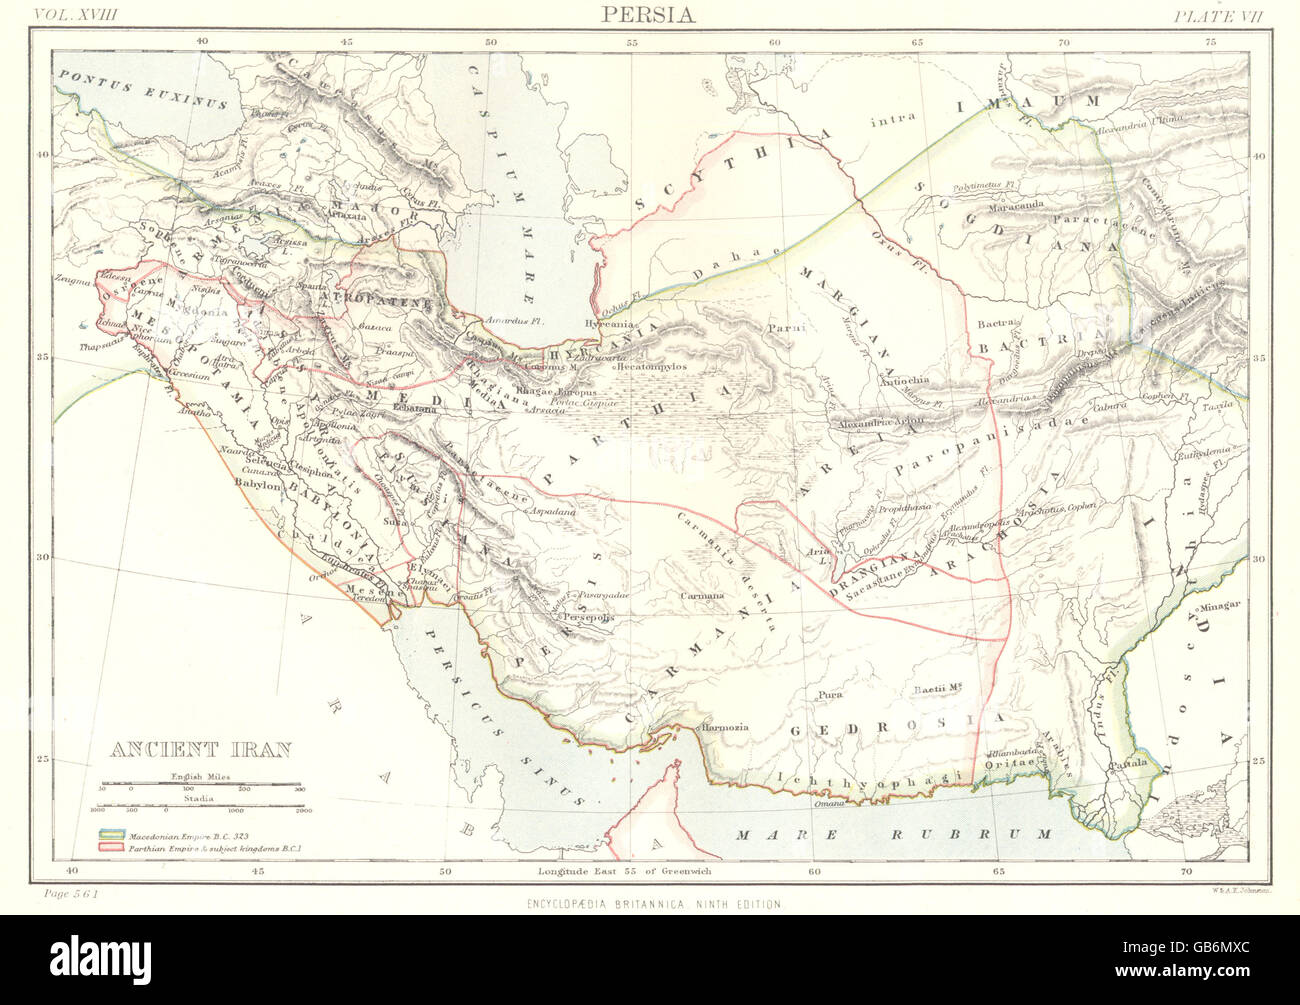 La antigua Persia: Persia Irán; Irán antiguo. Iraq. La novena edición de la Britannica 1898 mapa Foto de stock